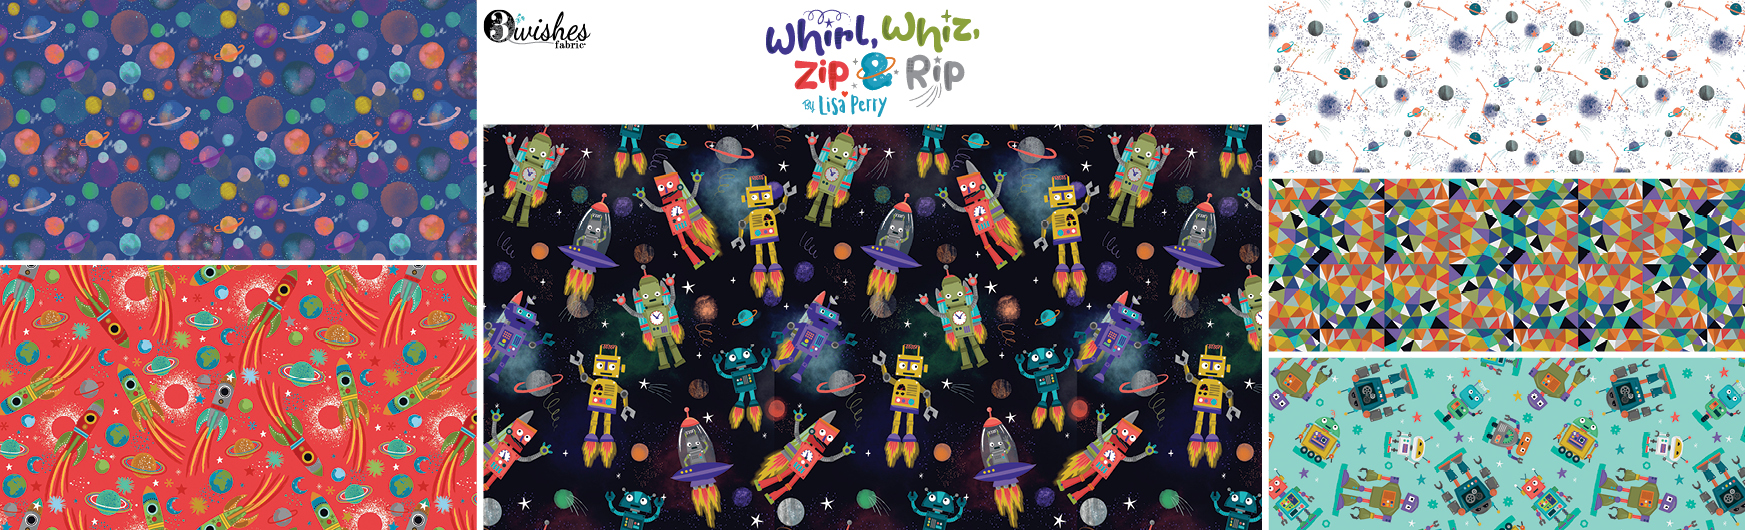 Whirl, Whiz, Zip & Rip